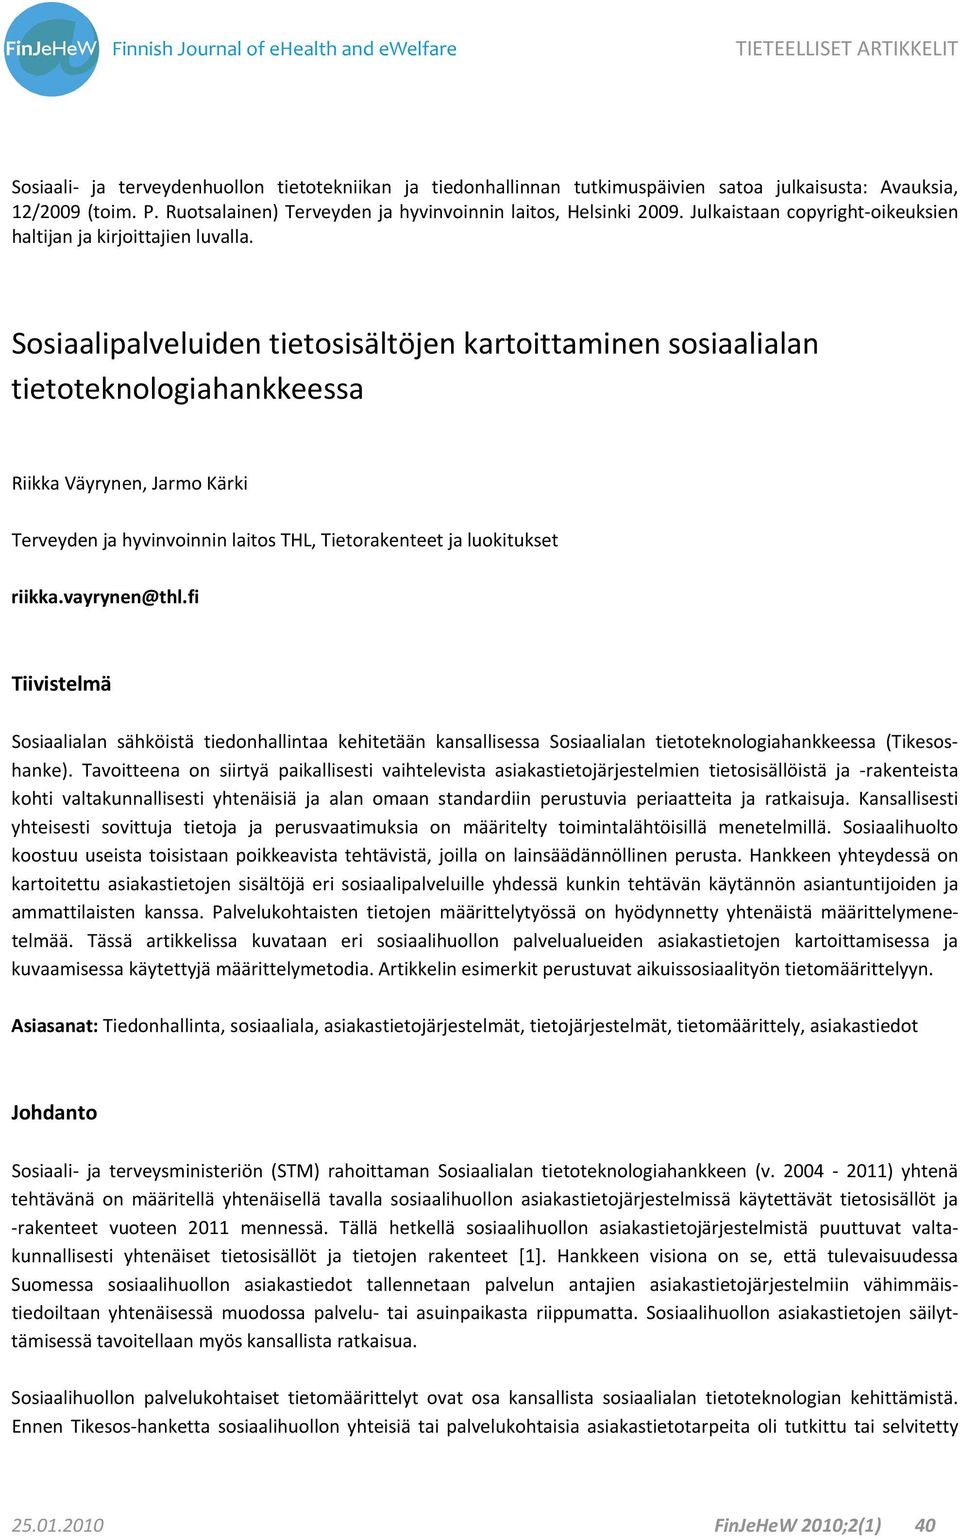 Sosiaalipalveluiden tietosisältöjen kartoittaminen sosiaalialan tietoteknologiahankkeessa Riikka Väyrynen, Jarmo Kärki Terveyden ja hyvinvoinnin laitos THL, Tietorakenteet ja luokitukset riikka.